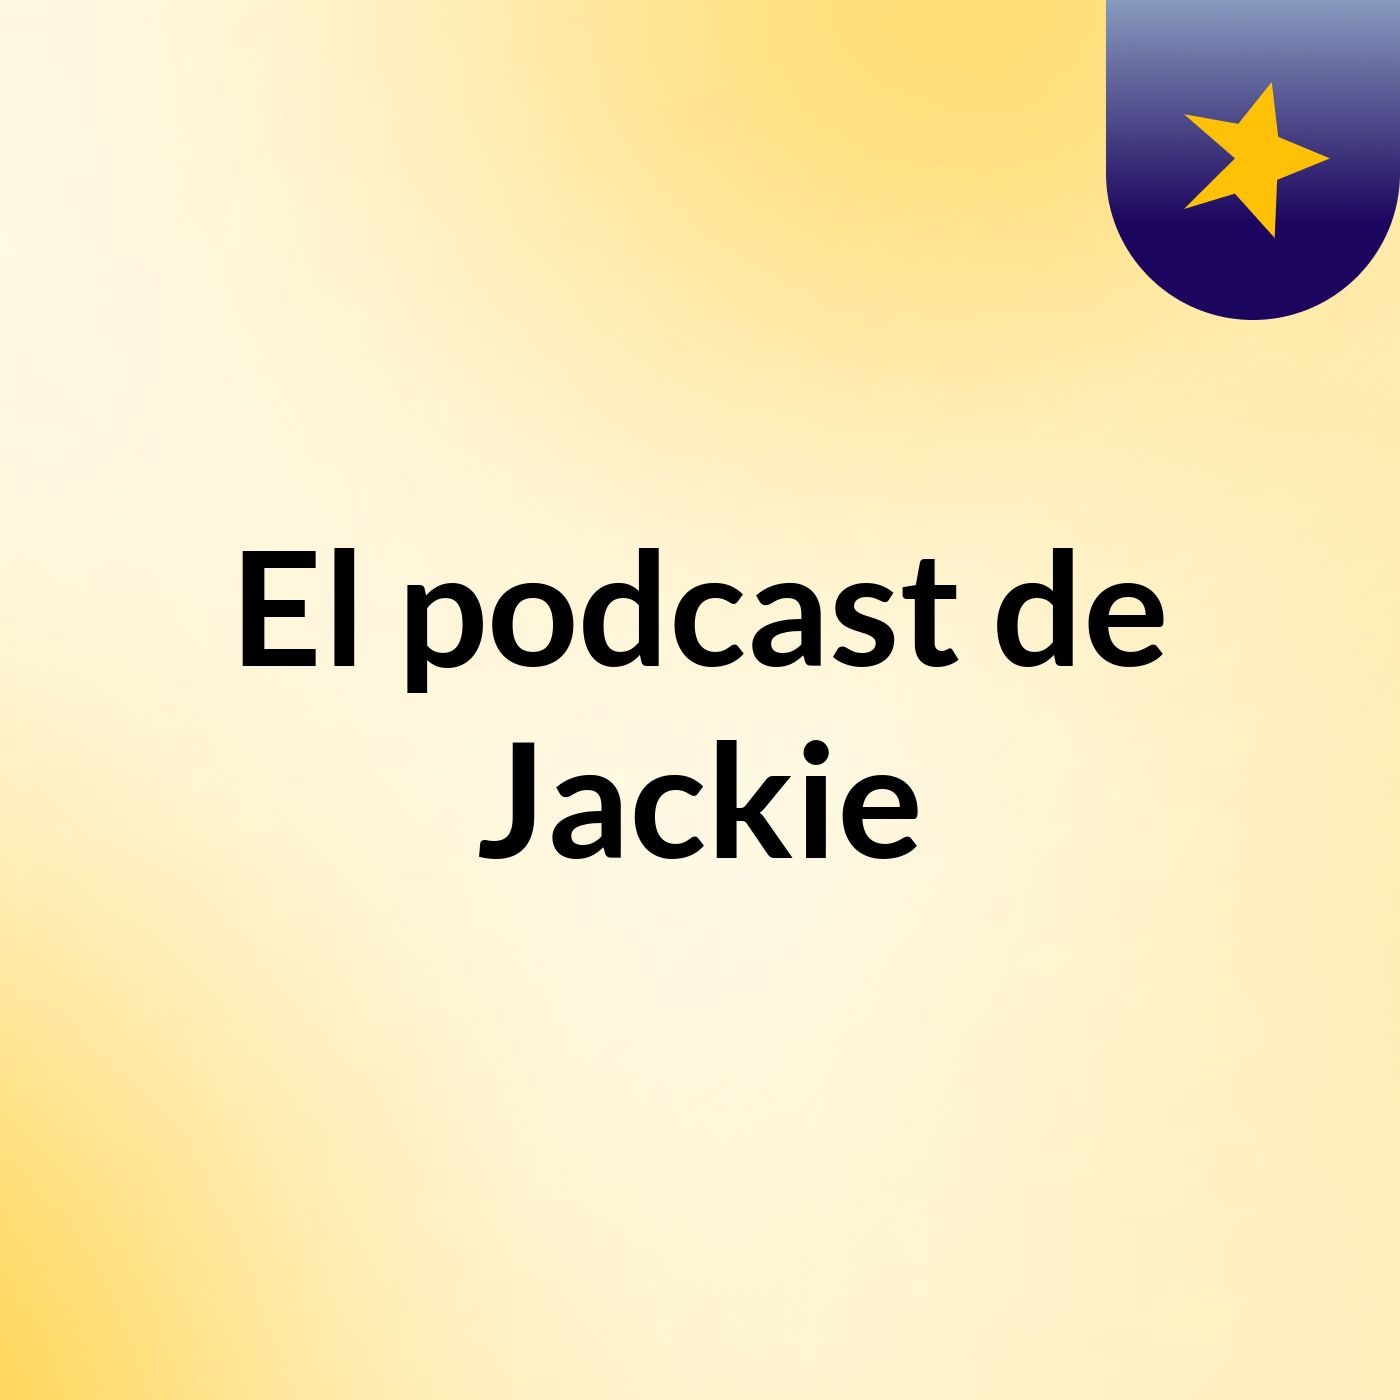 El podcast de Jackie